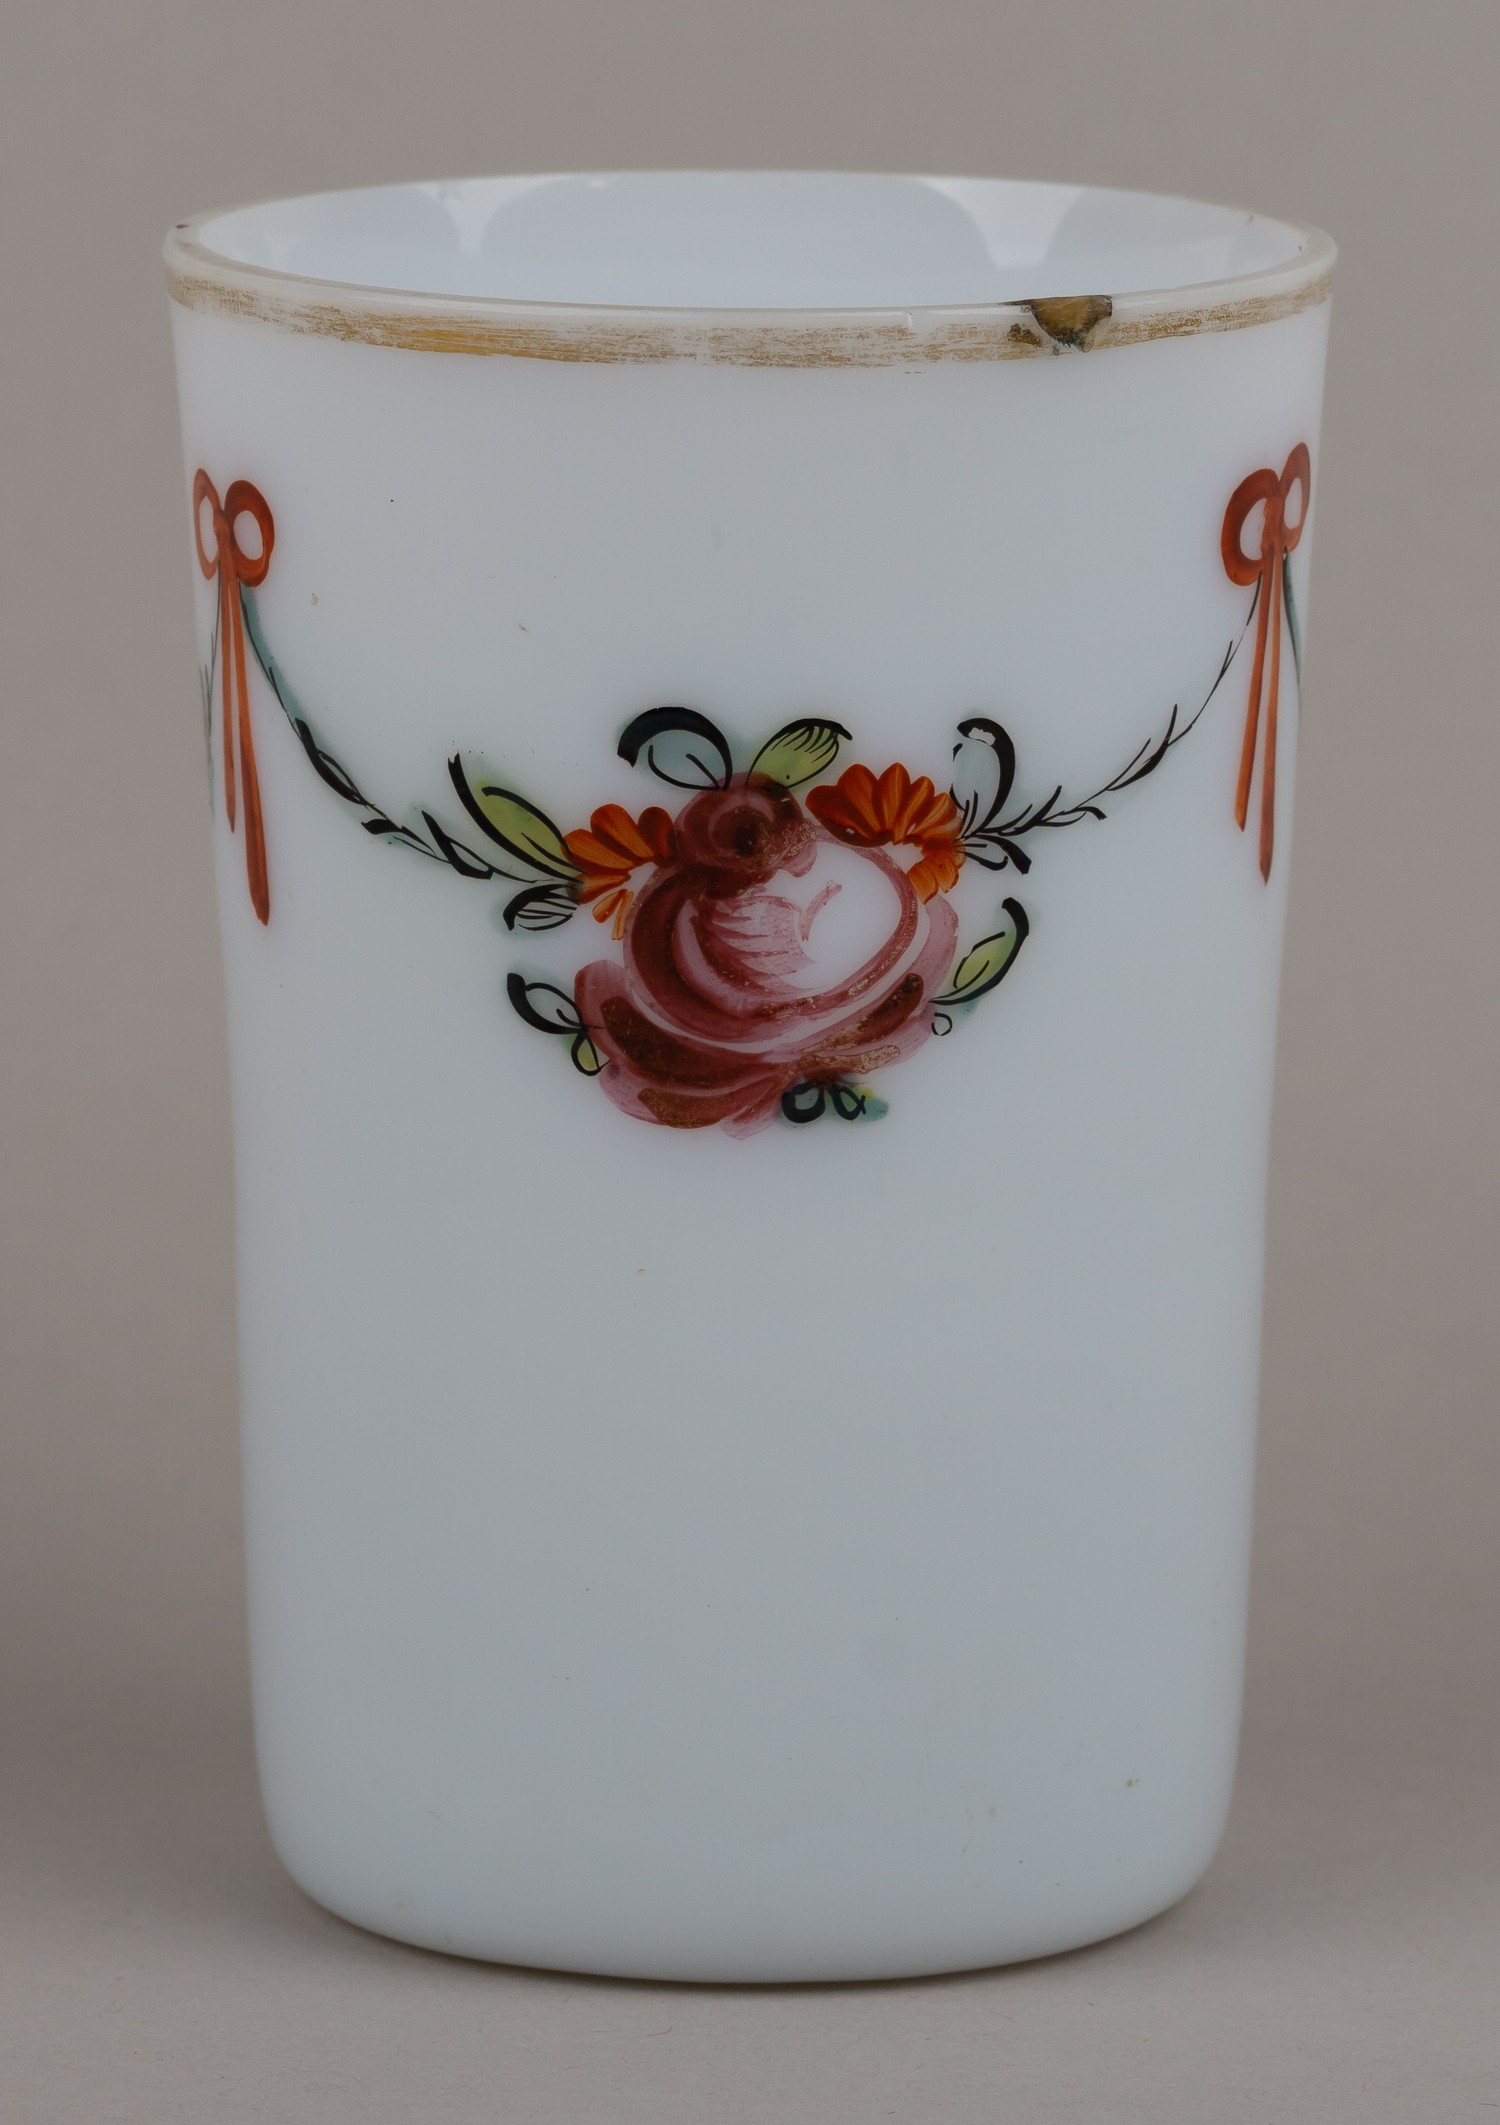 Стакан молочного стекла с изображением розы и цветочной гирлянды. Россия, 1780-1790-е годы.